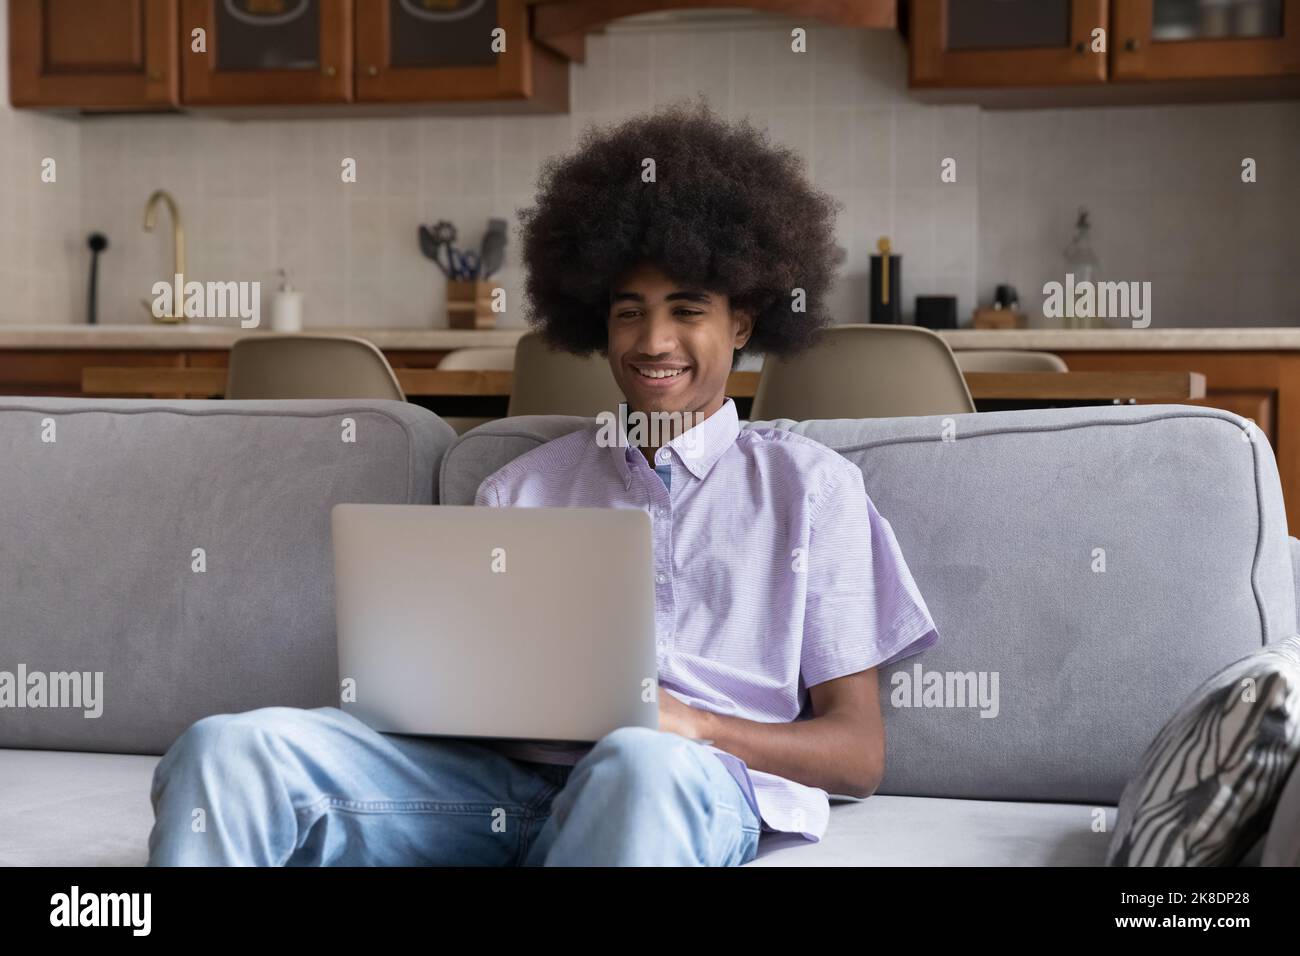 Un jeune garçon souriant s'assoit sur un canapé avec un ordinateur portable Banque D'Images